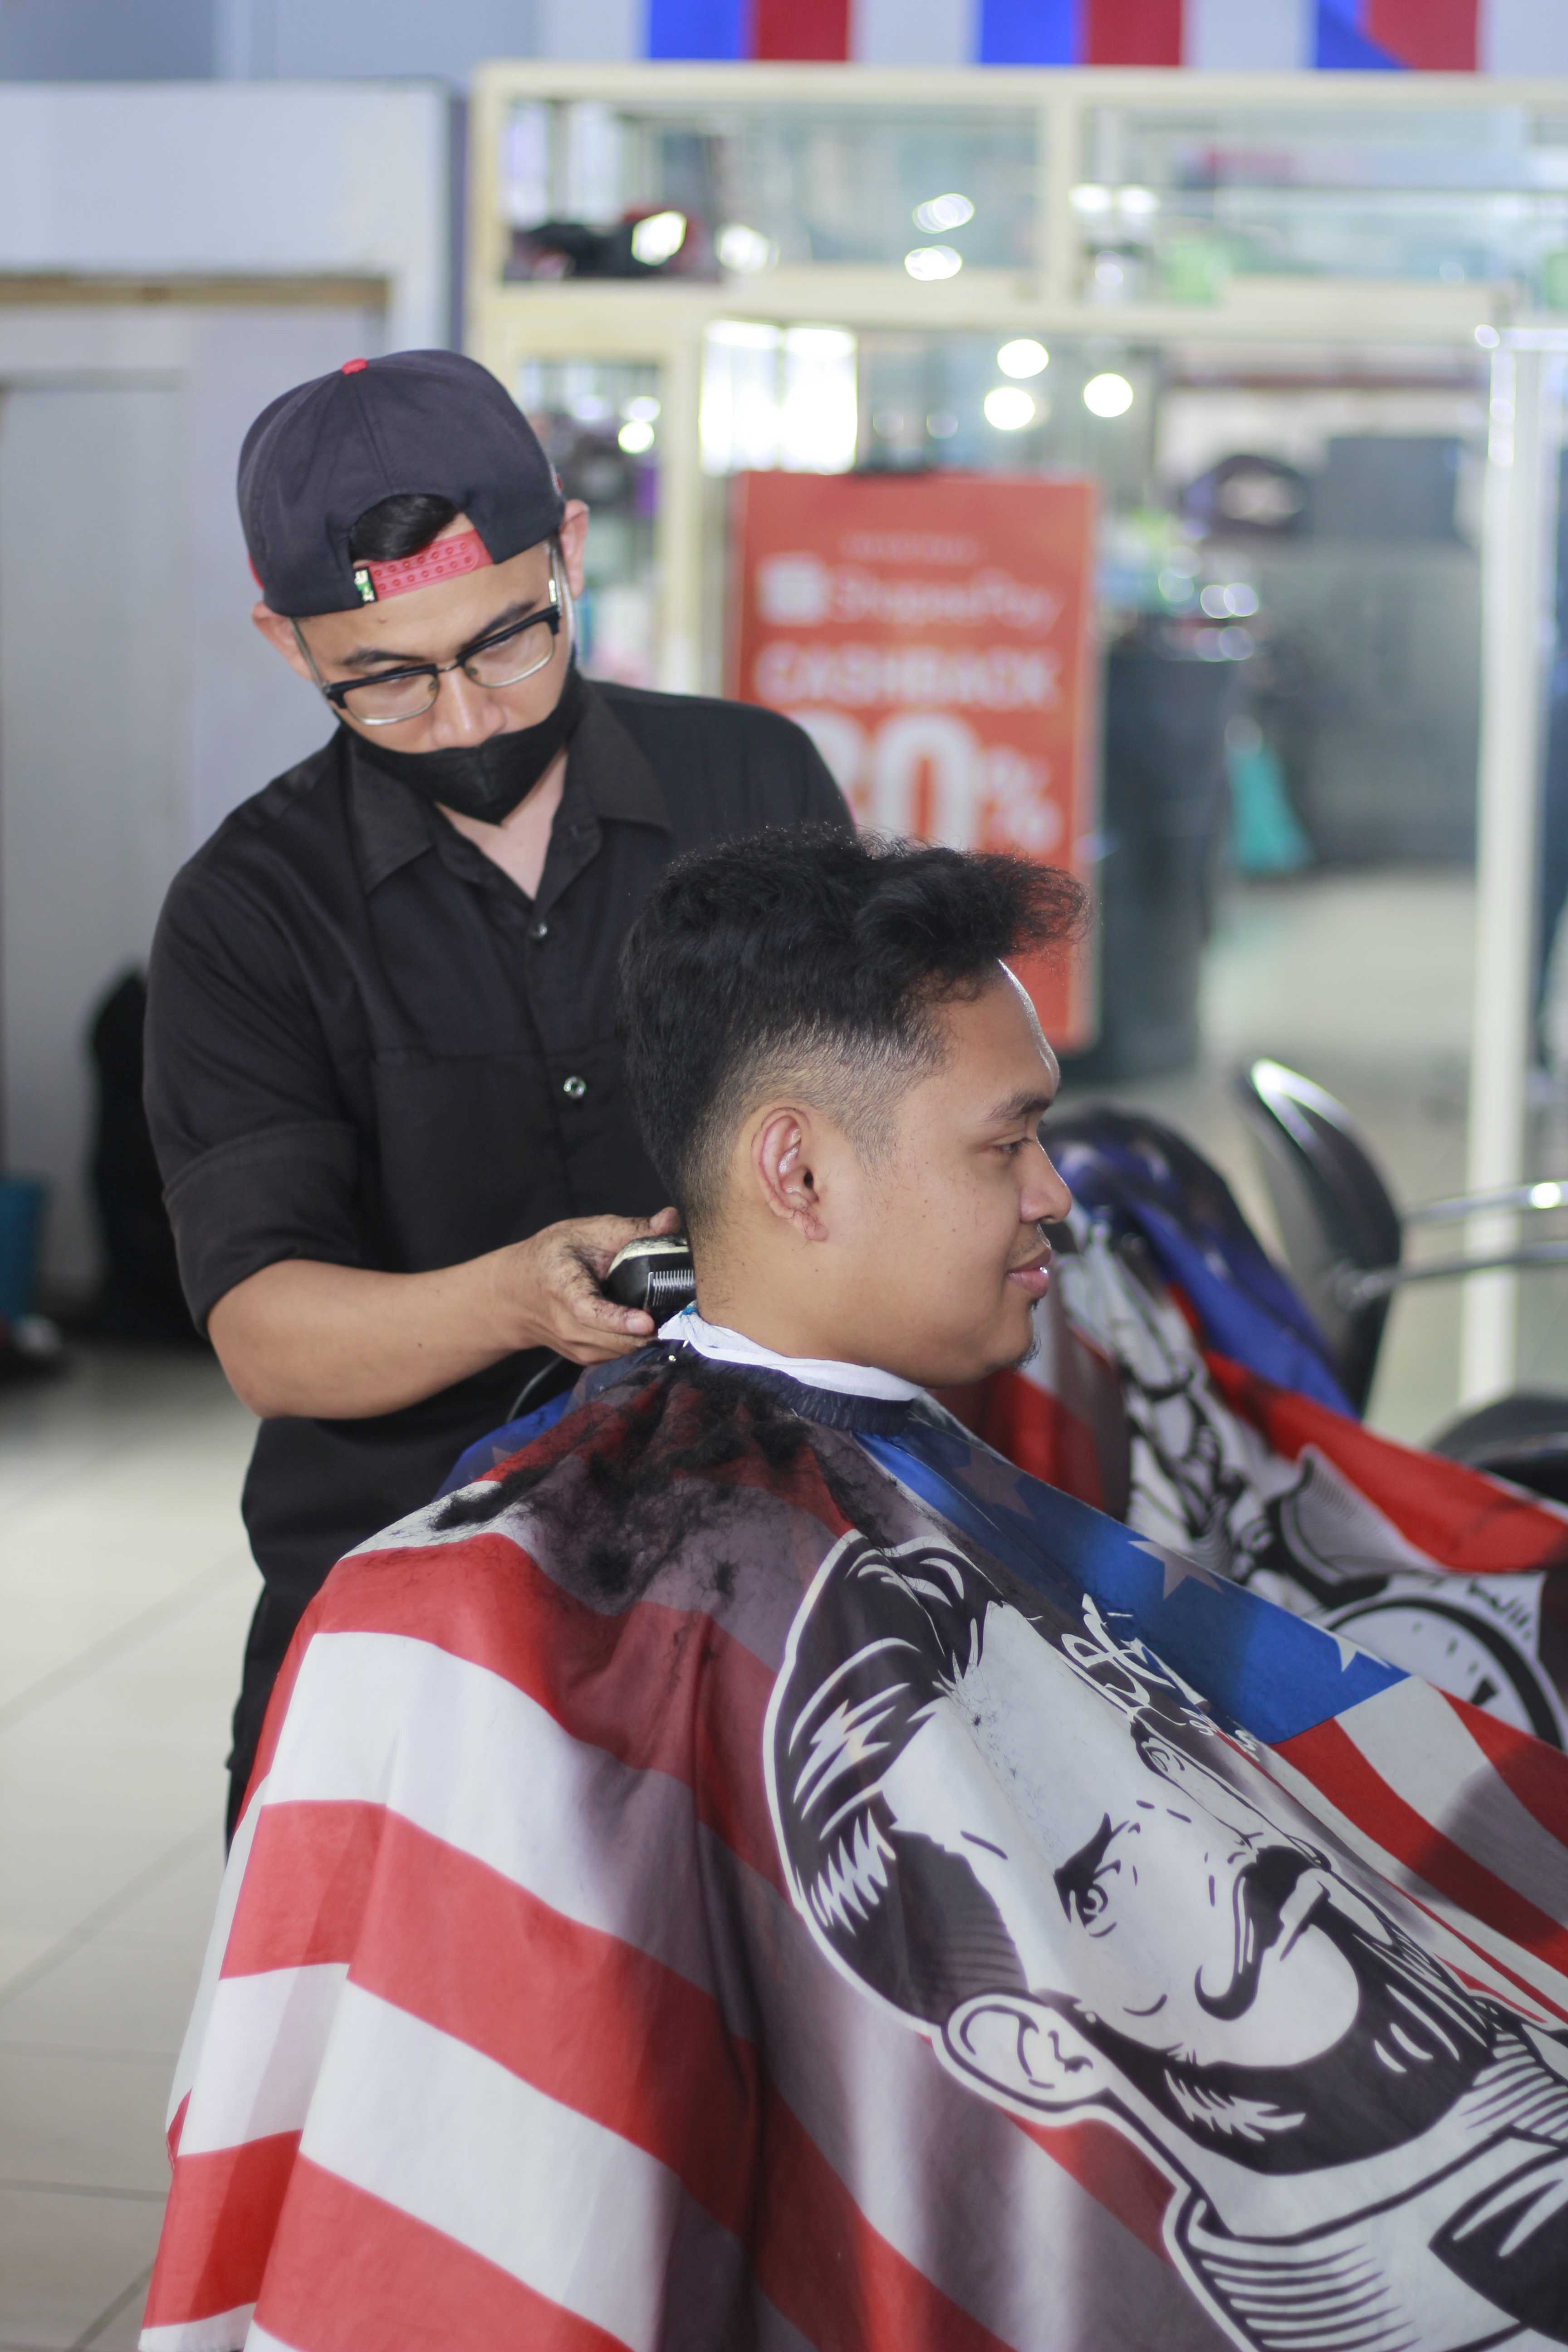 Tempat Barbershop Di Kelurahan Sawojajar Murah